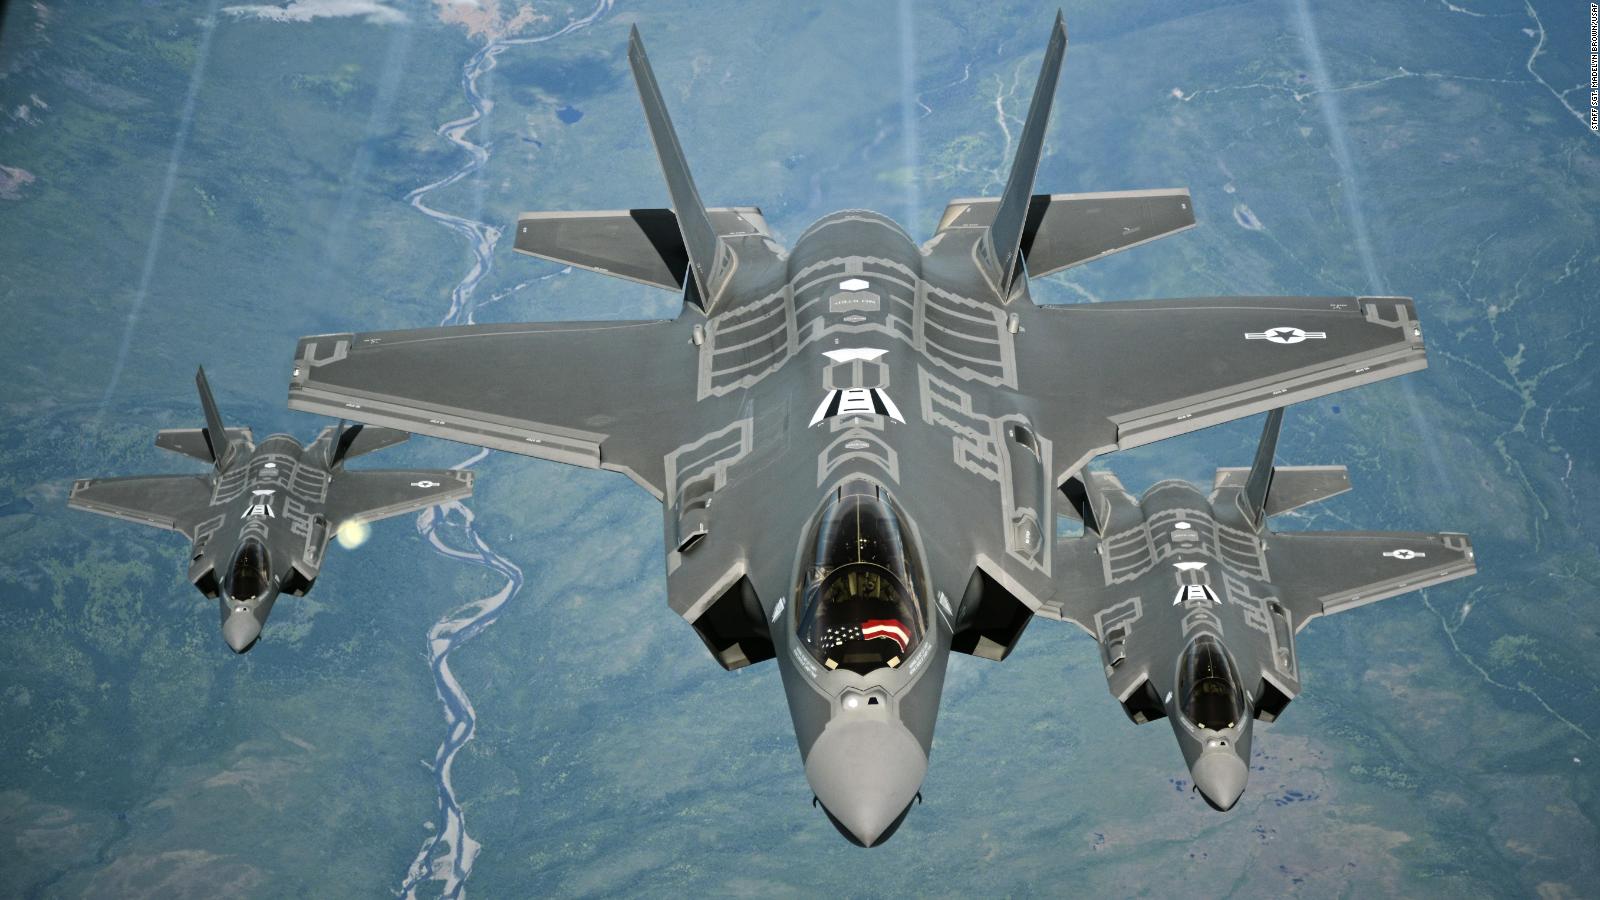 Neutral Switzerland plans to buy dozen of US F-35 fighter jets - CNN